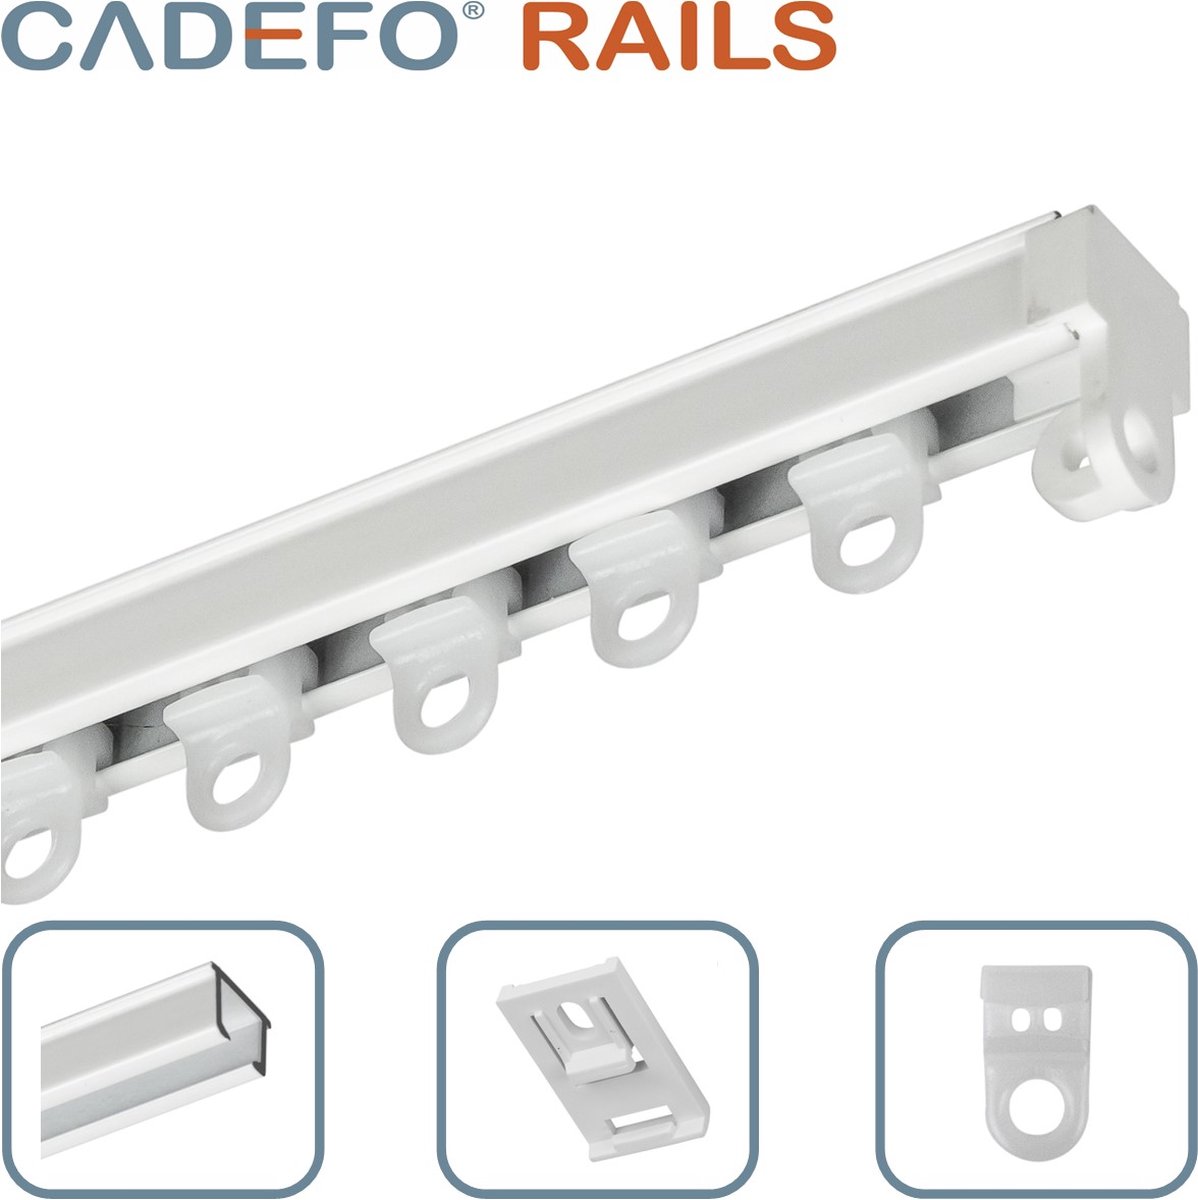 CADEFO RAILS (401 - 450 cm) Gordijnrails - Compleet op maat! - UIT 1 STUK - Leverbaar tot 6 meter - Plafondbevestiging - Lengte 442 cm